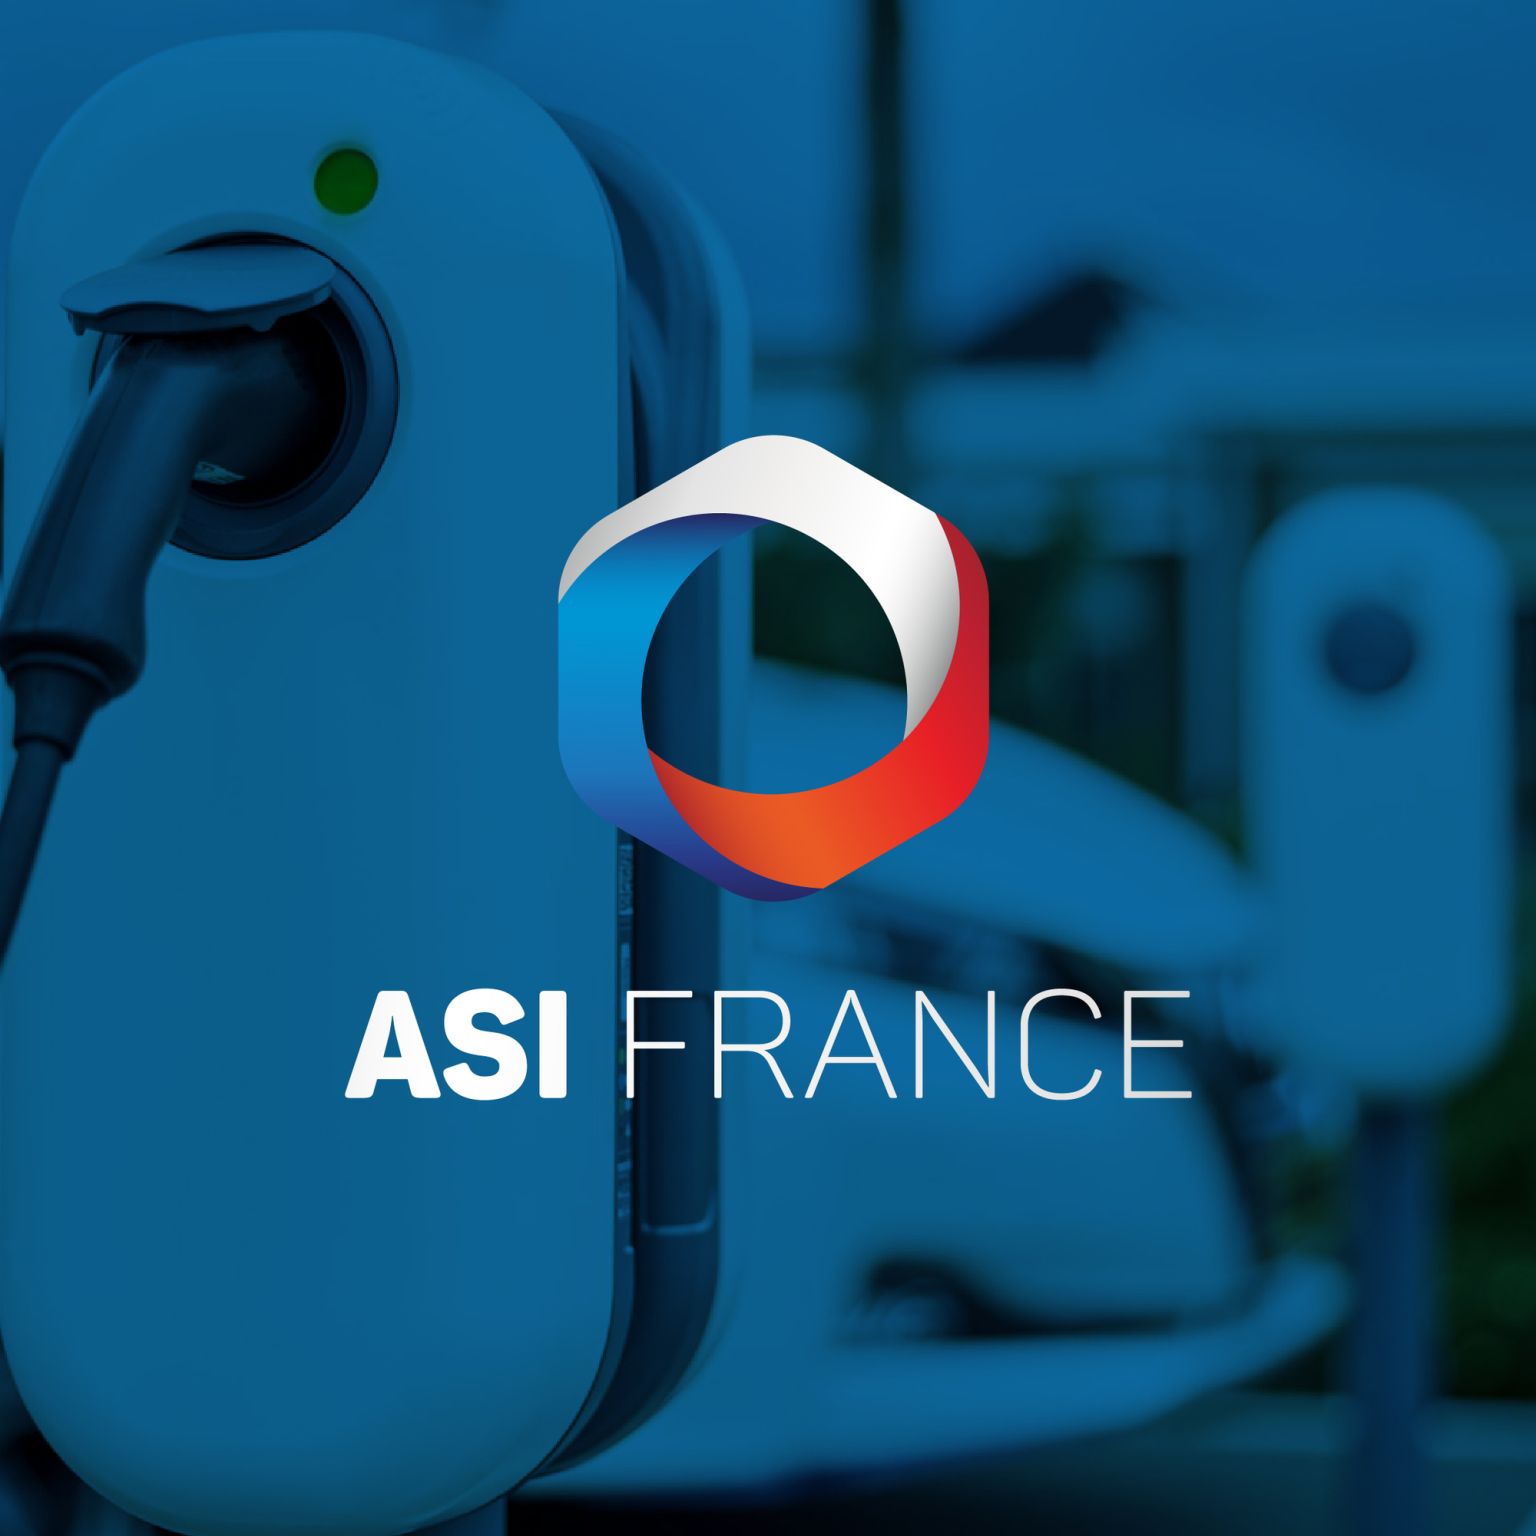 ASI FRANCE - Installation de Bornes de Recharge pour Véhicules Électriques